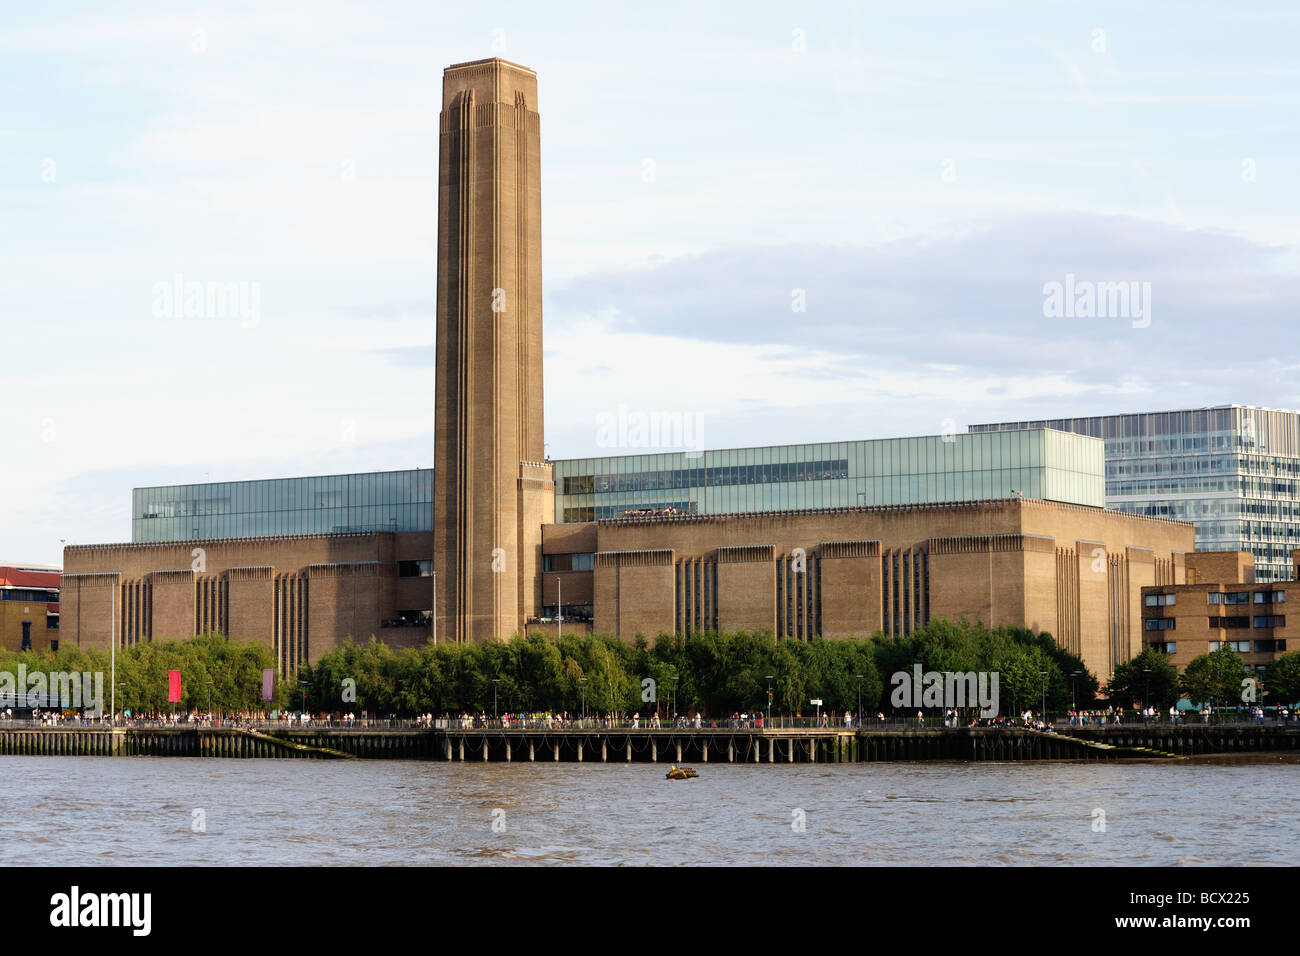 Tate Modern, musée national d'art moderne, l'ancienne centrale électrique de Bankside, Londres, Angleterre, Royaume-Uni, Europe Banque D'Images